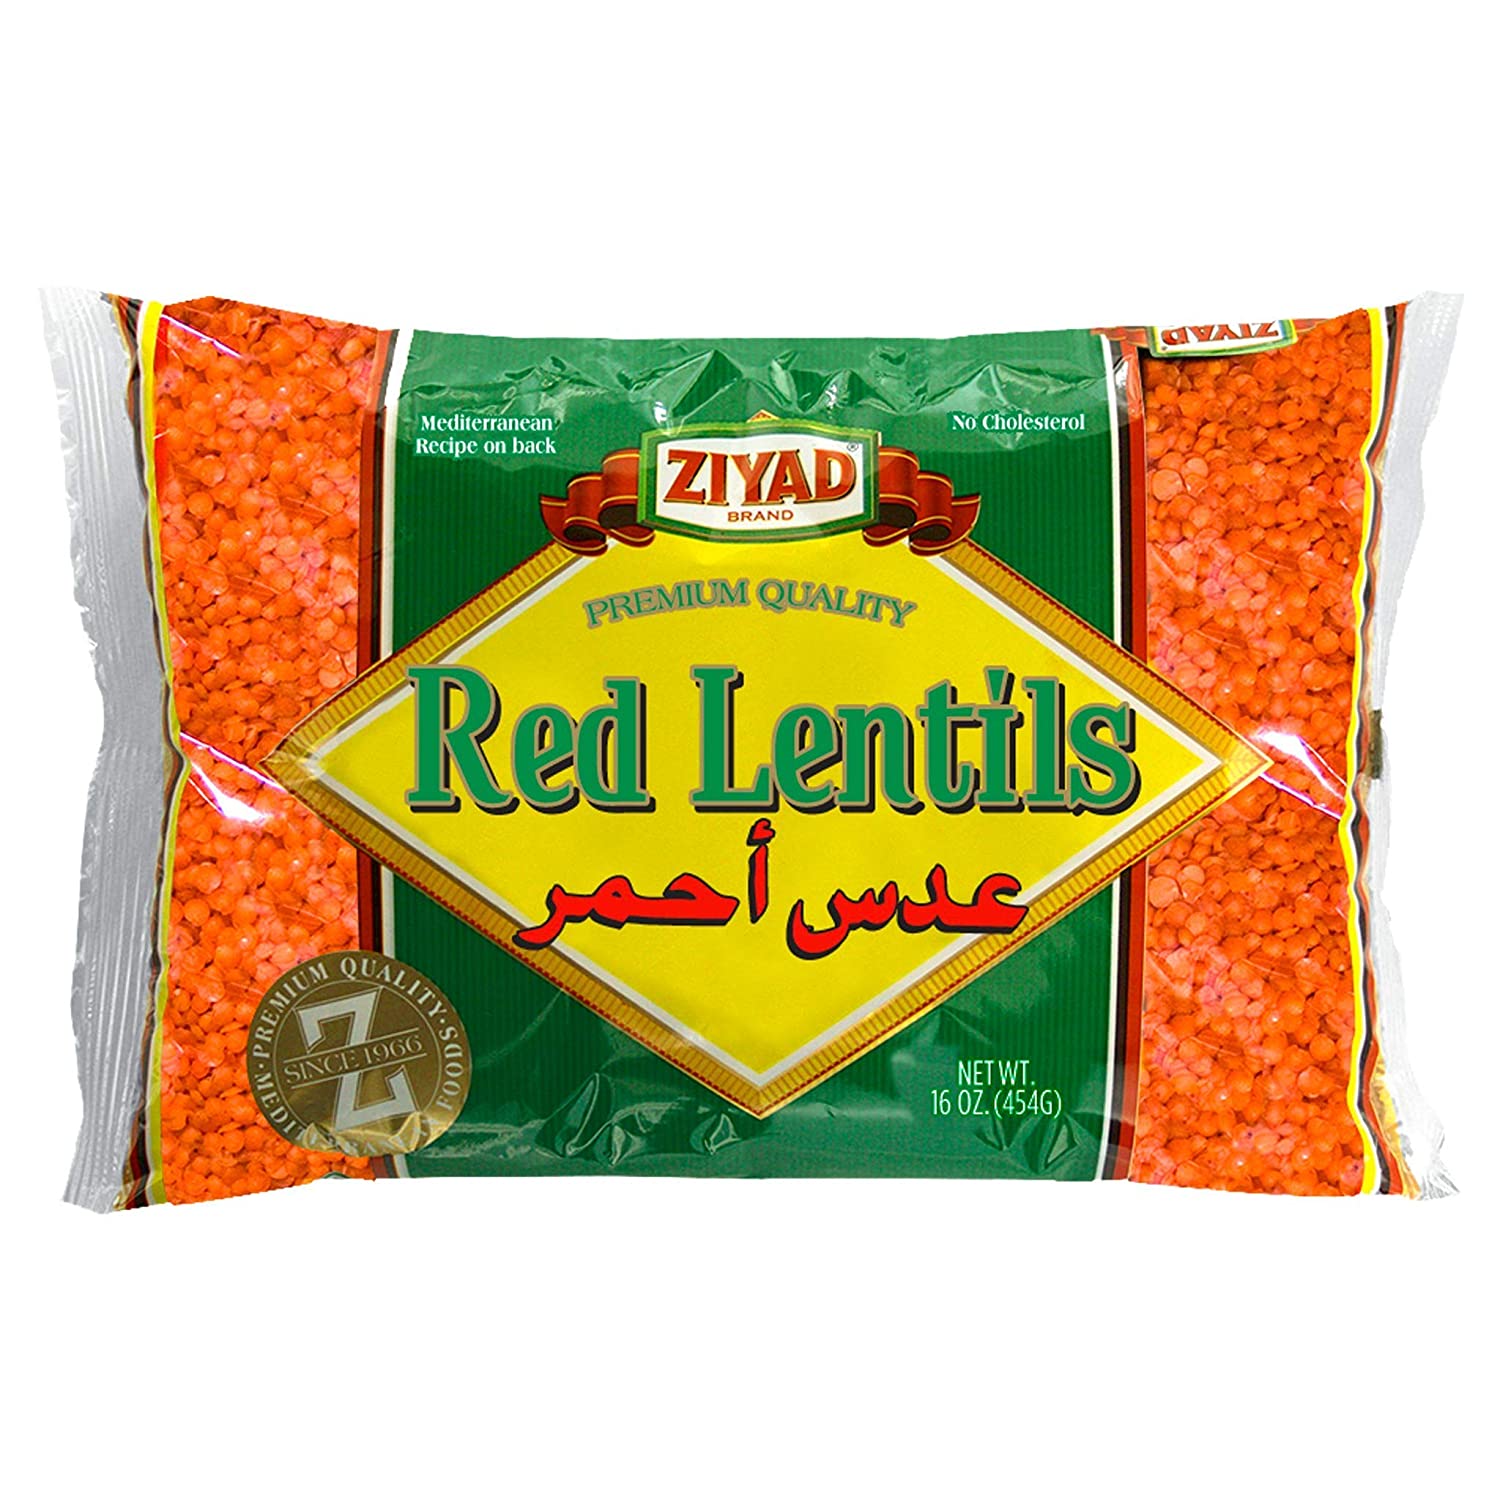 Ziyad Red Lentils